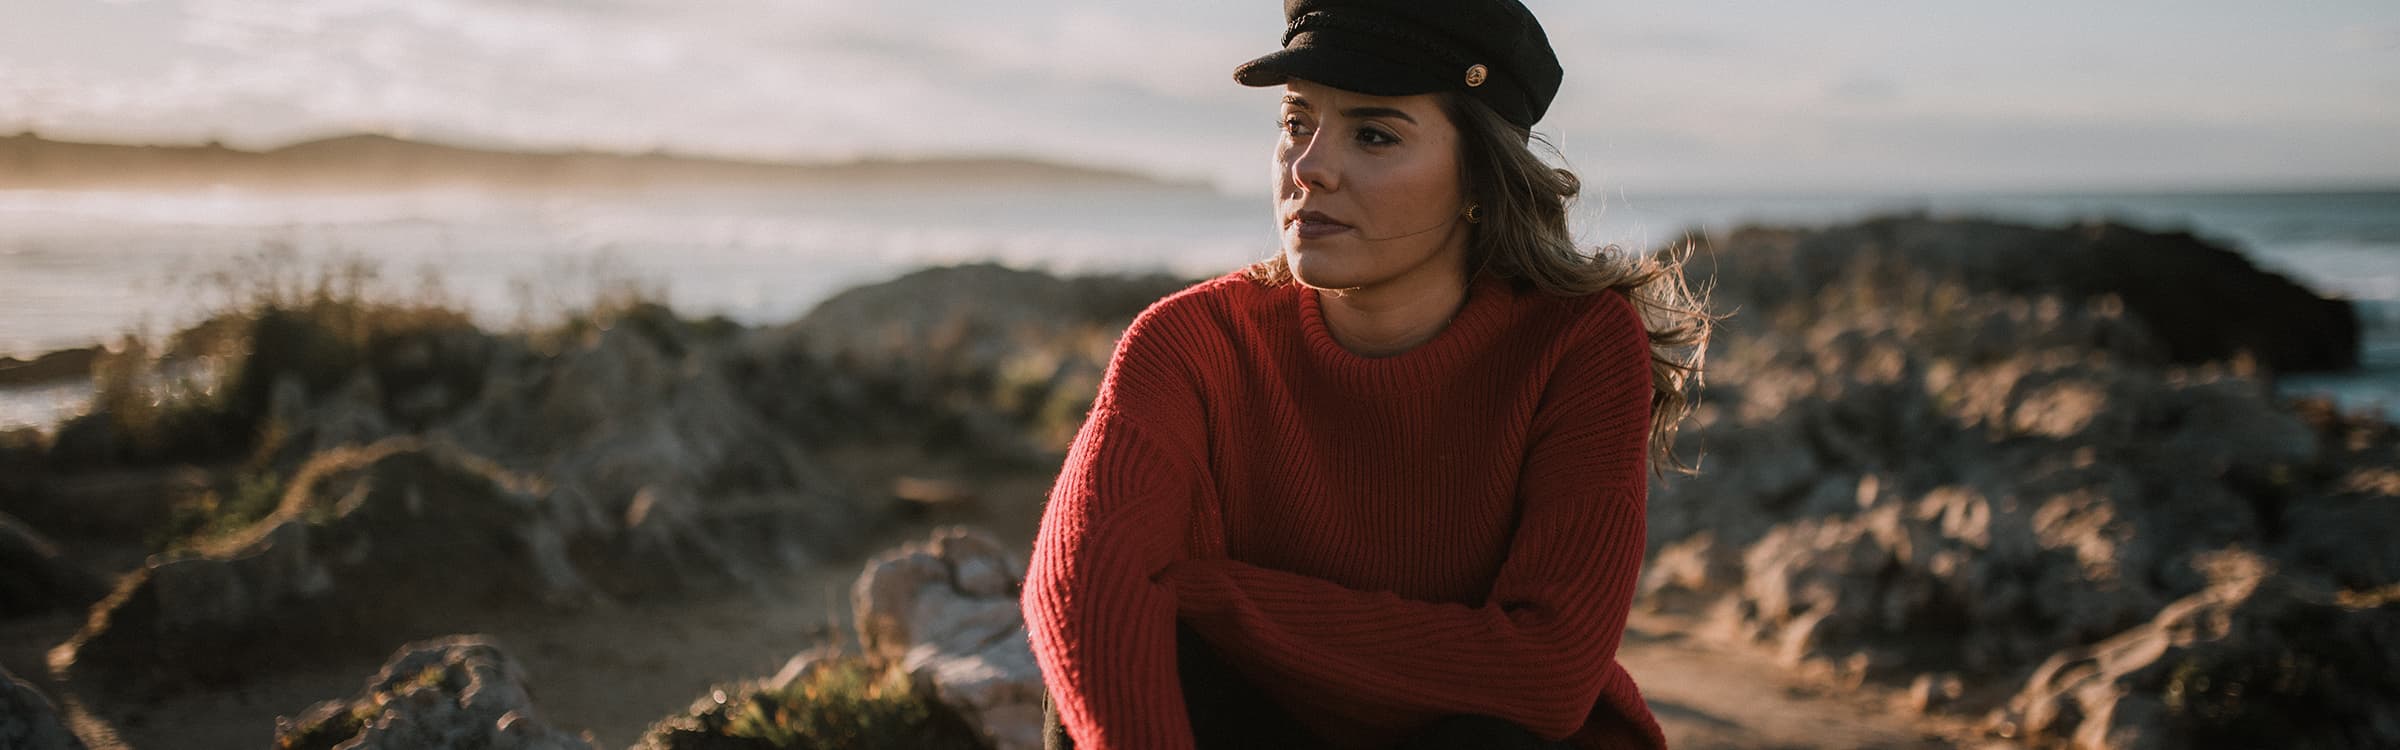 Sitzende Frau mit maritimer Mütze und rotem Pullover